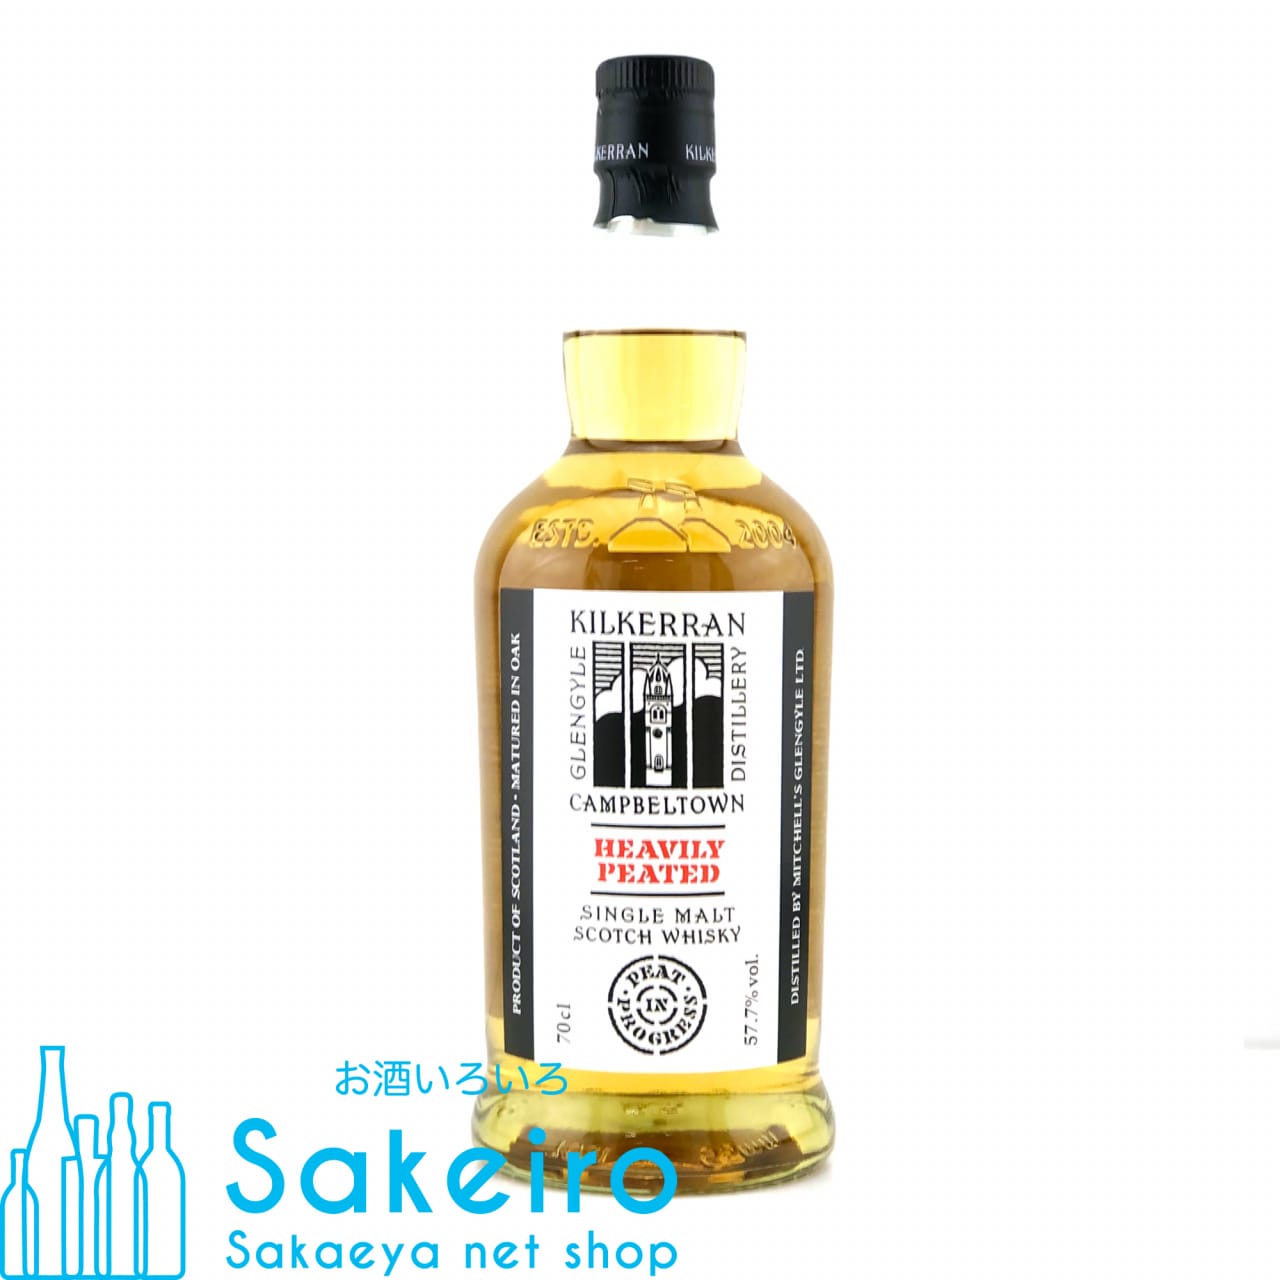 キルケラン ヘビリーピーテッド バッチ5 57.7% 700ml お酒いろいろ Sakeiro -Sakaeya net shop-